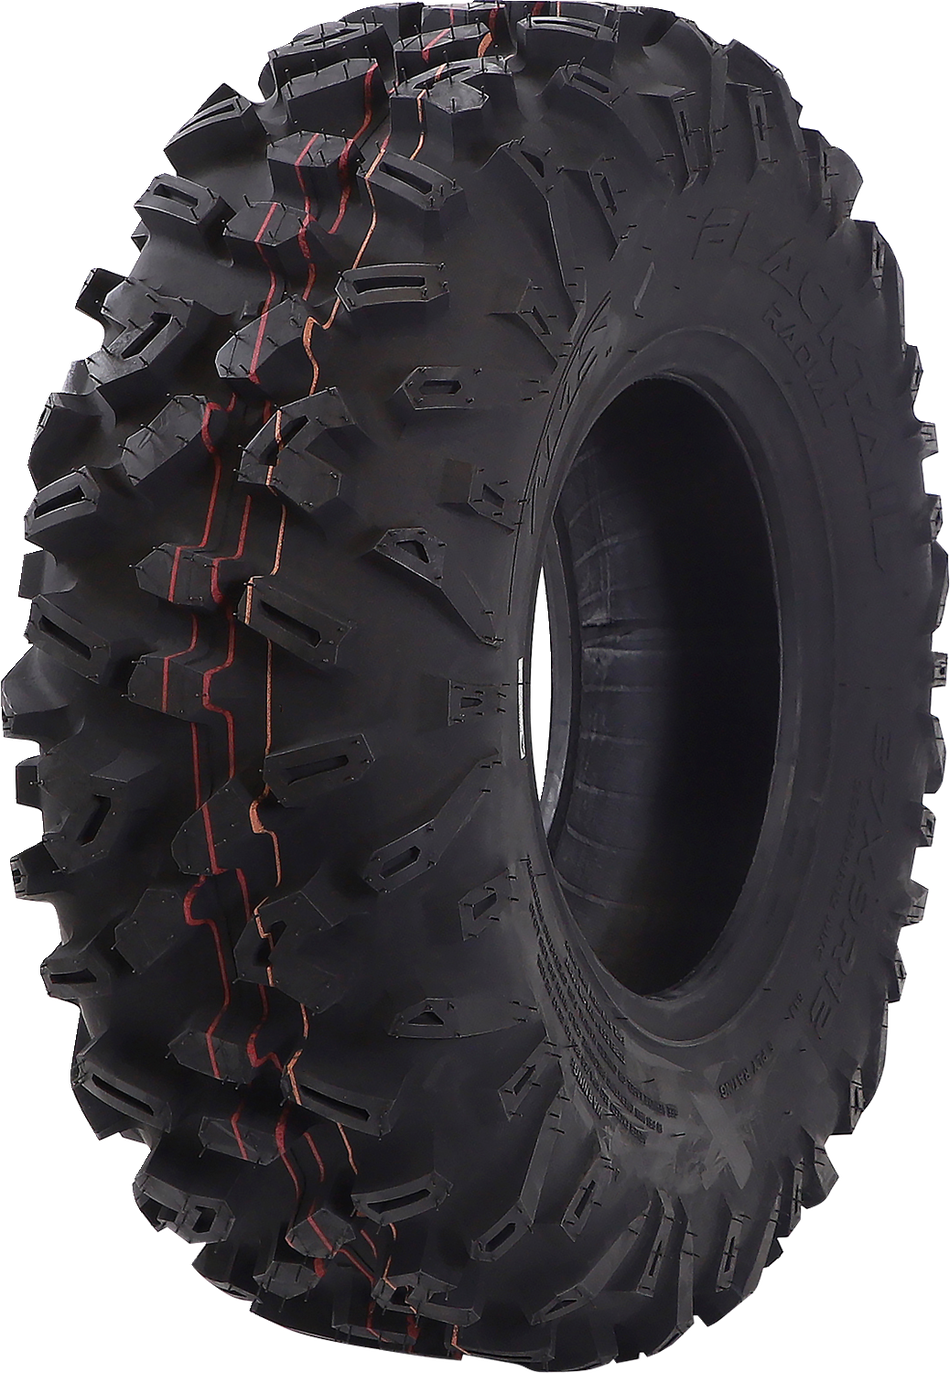 Neumático AMS - Blacktail - Delantero - 27x9R12 - 6 capas 1279-361 